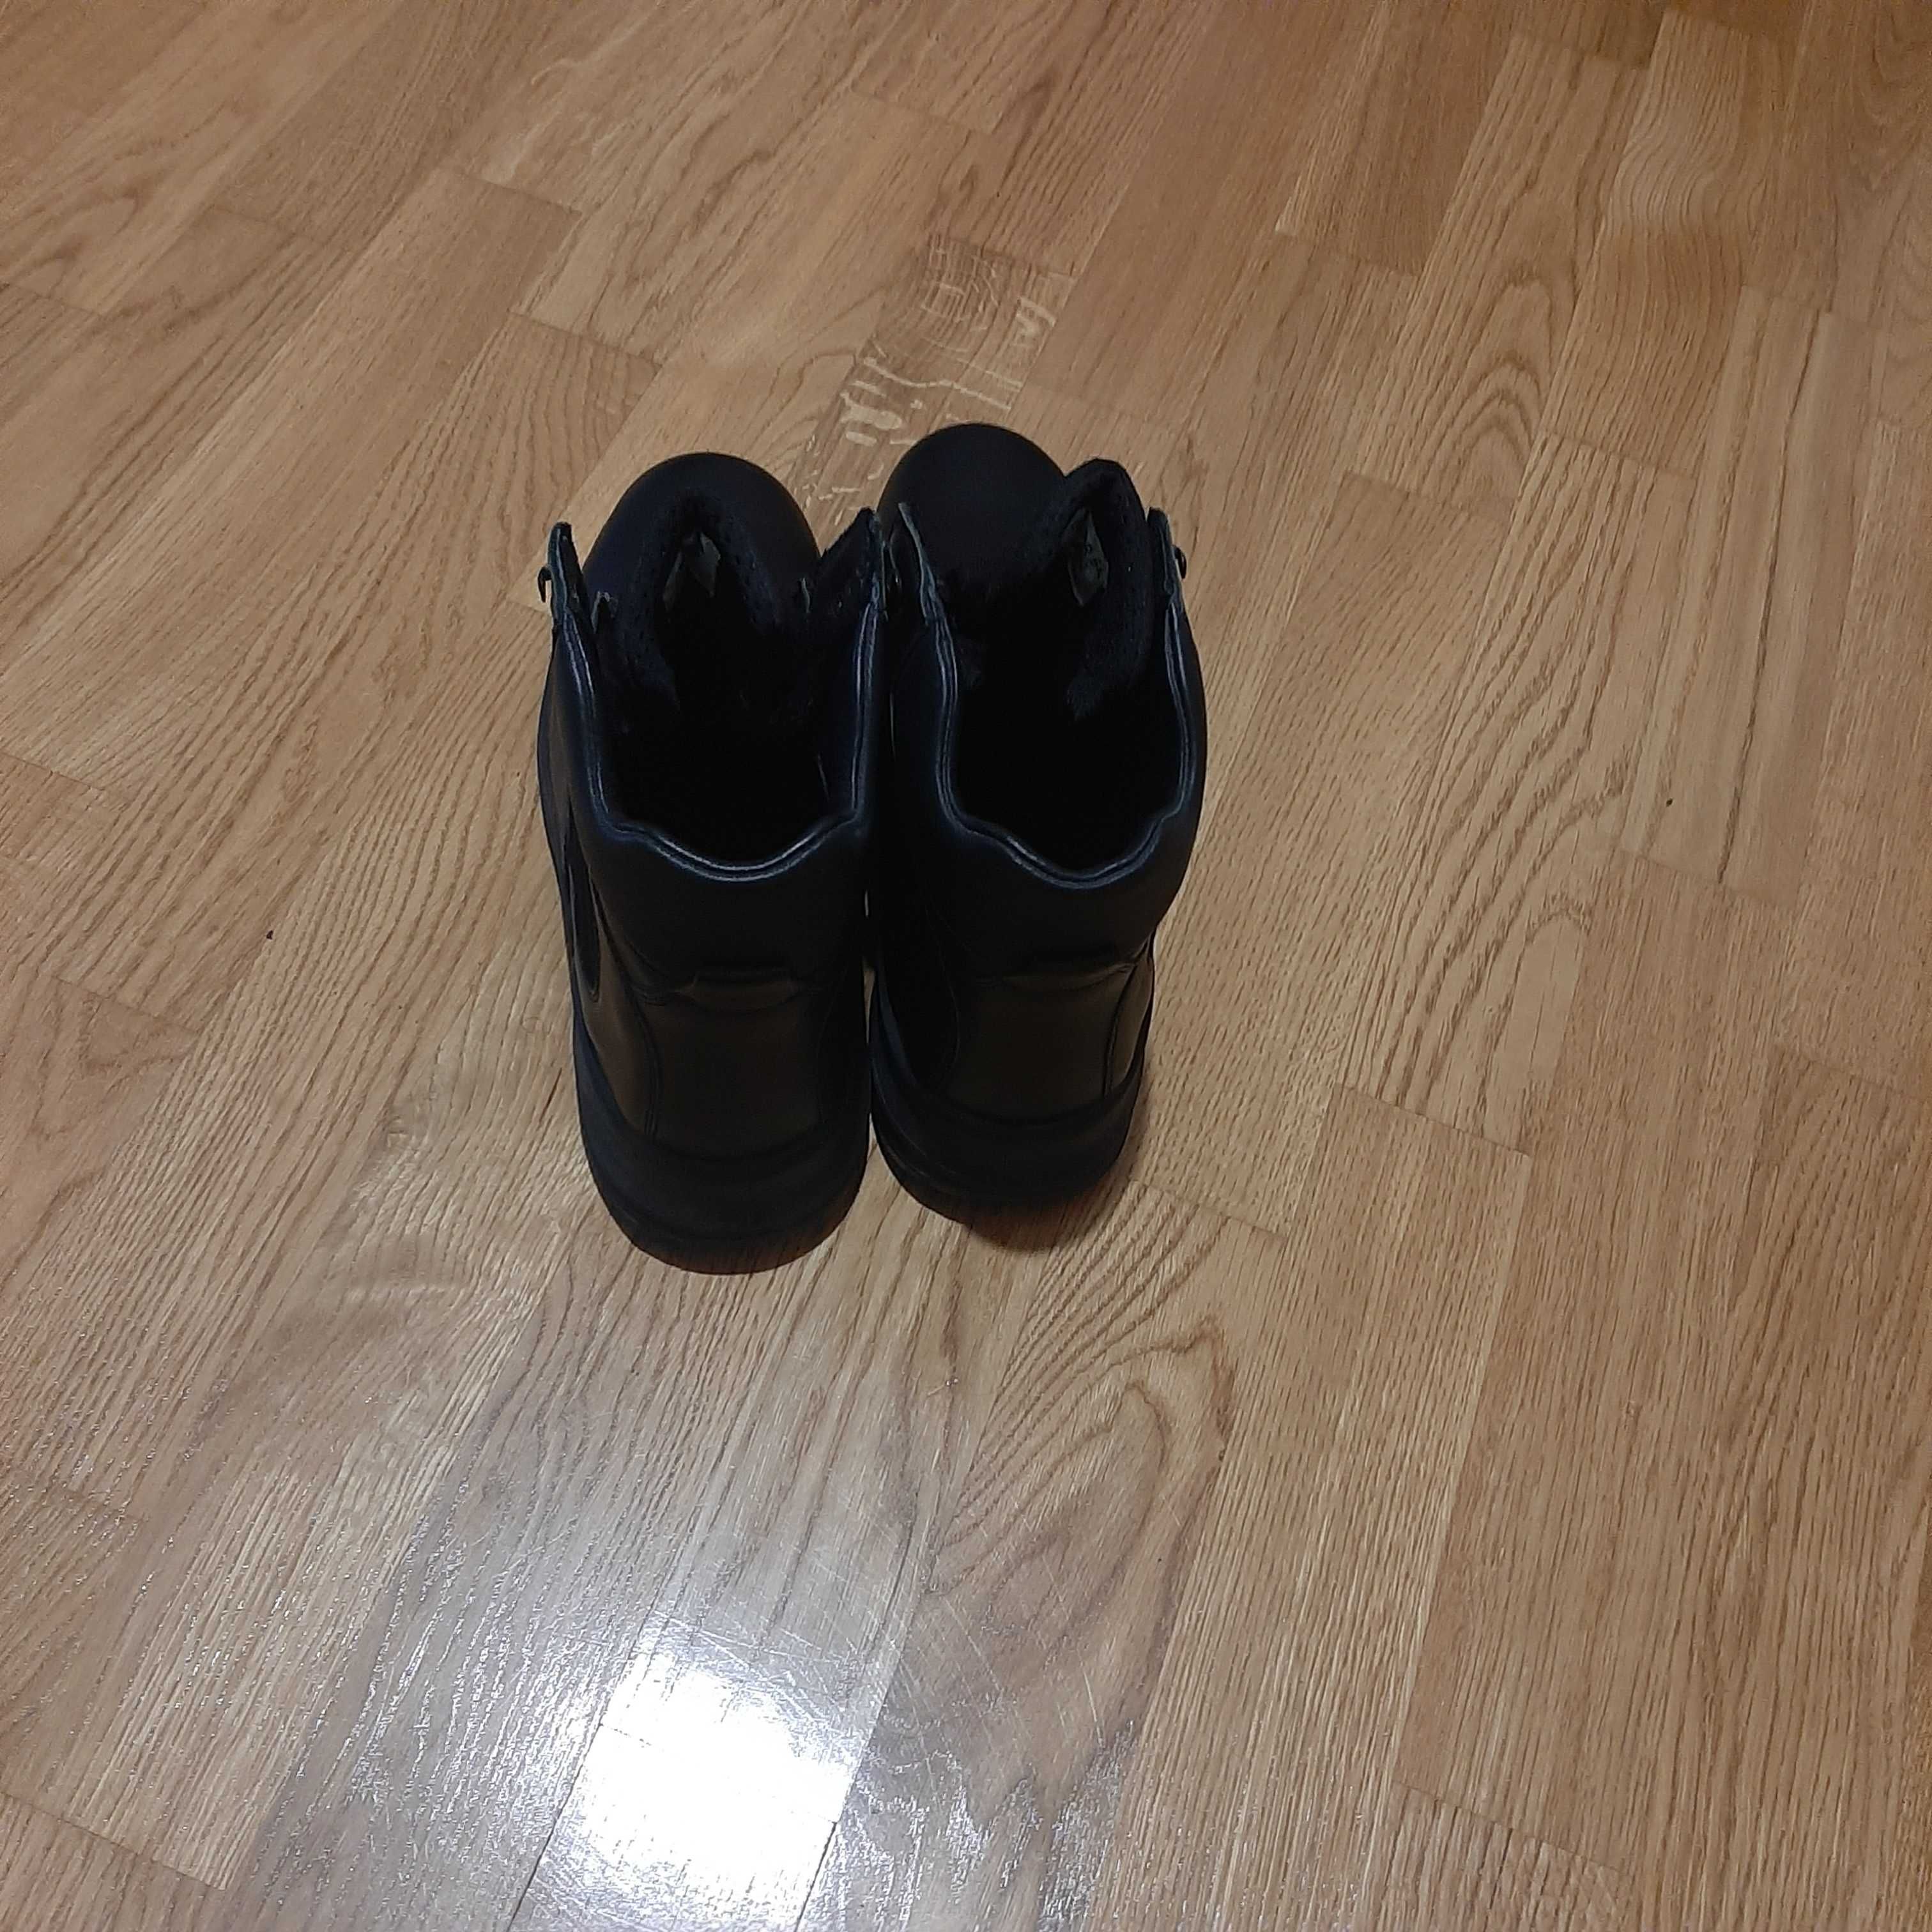 NOWE buty męskie czarne skórzane mundurowe, wojskowe GREGOR S.A.